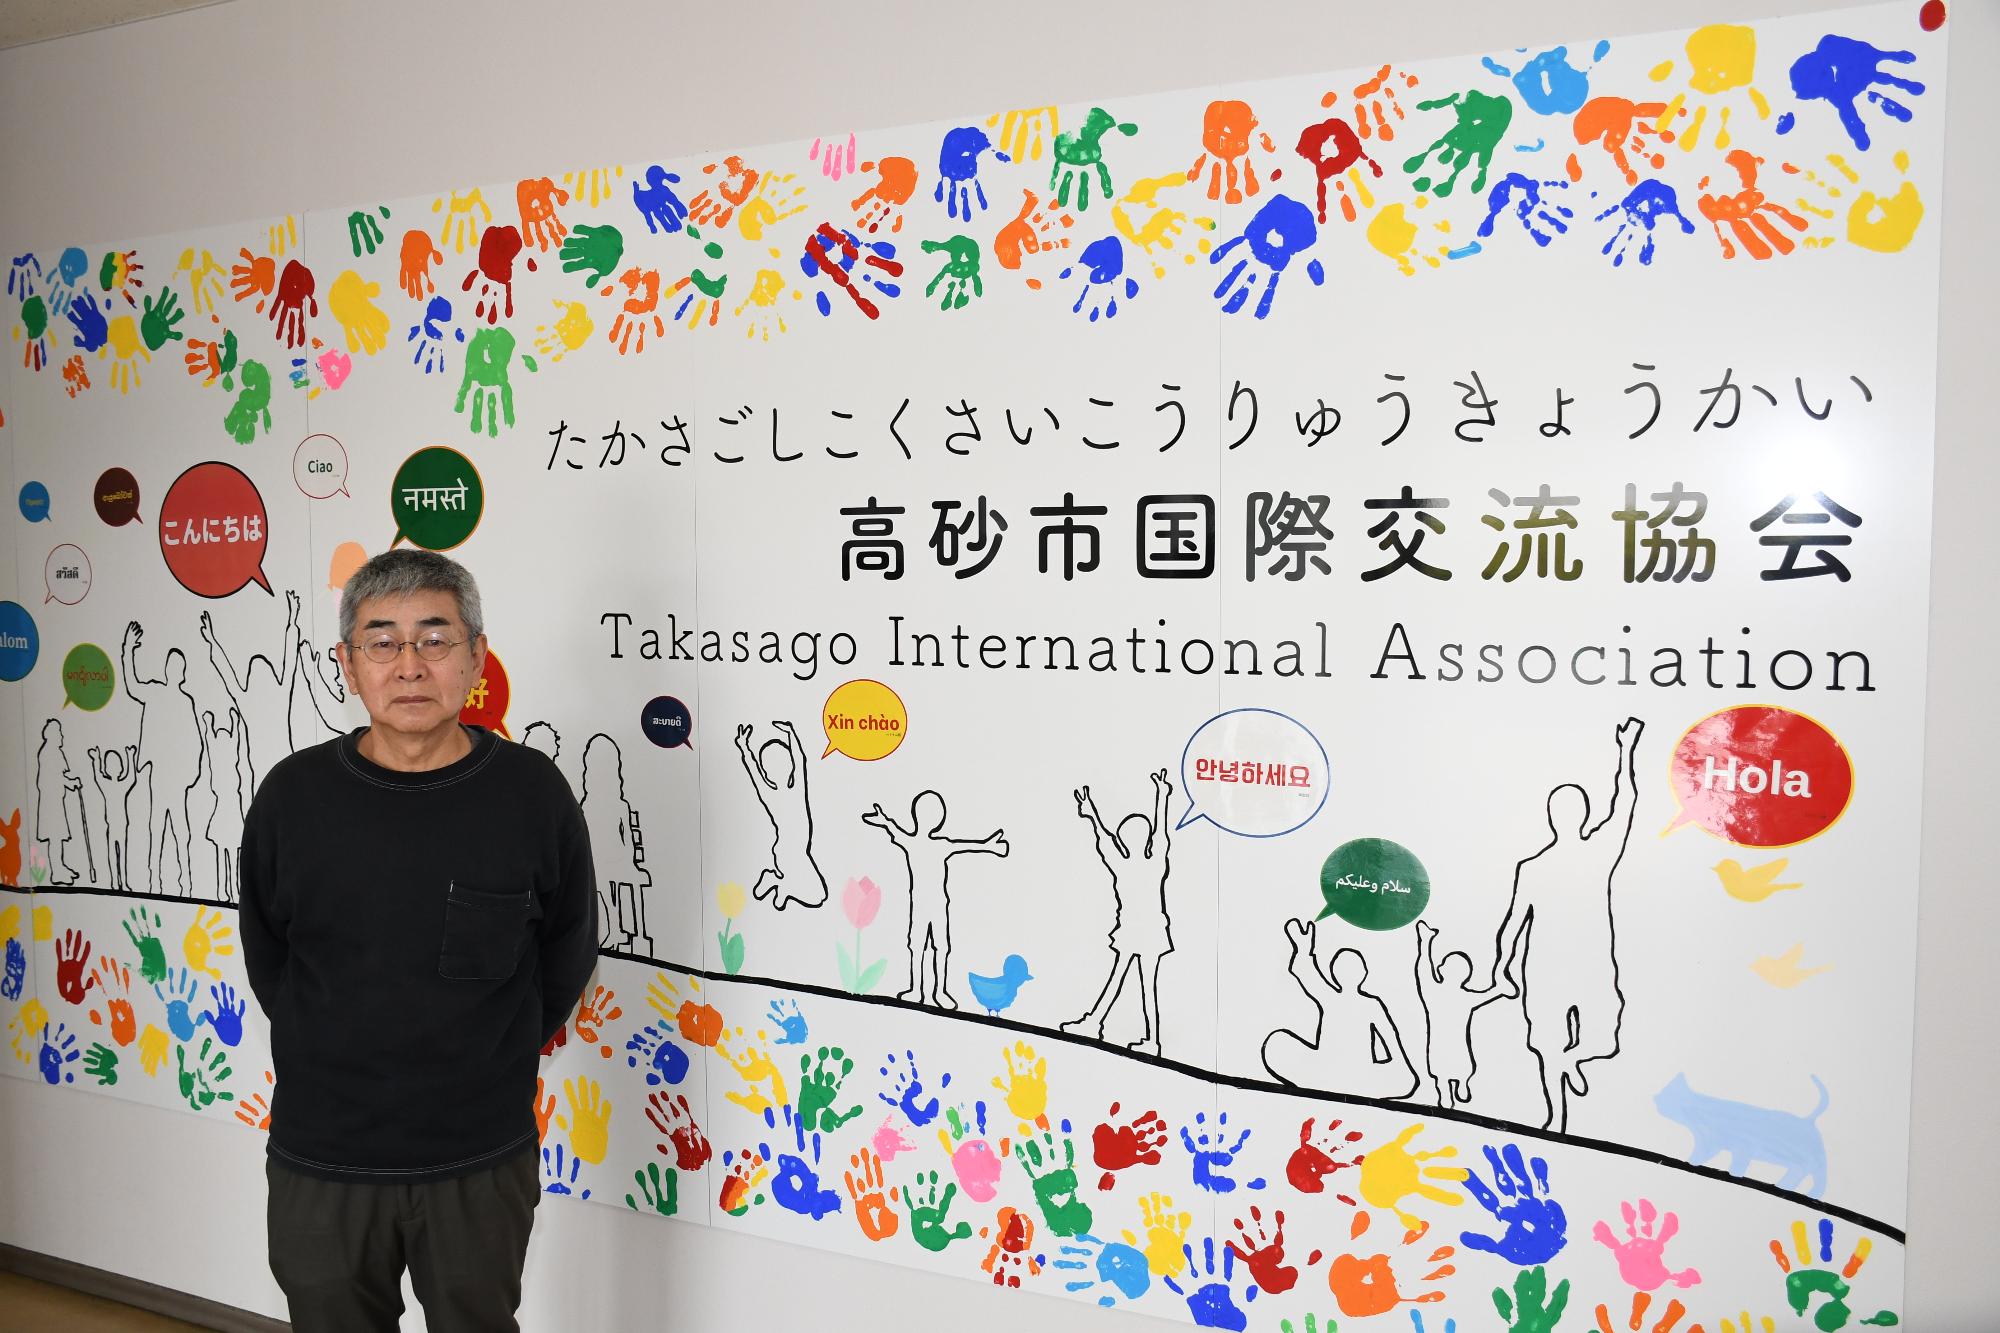 高砂市国際交流協会と書かれたカラフルな看板の前に立つ男性の写真